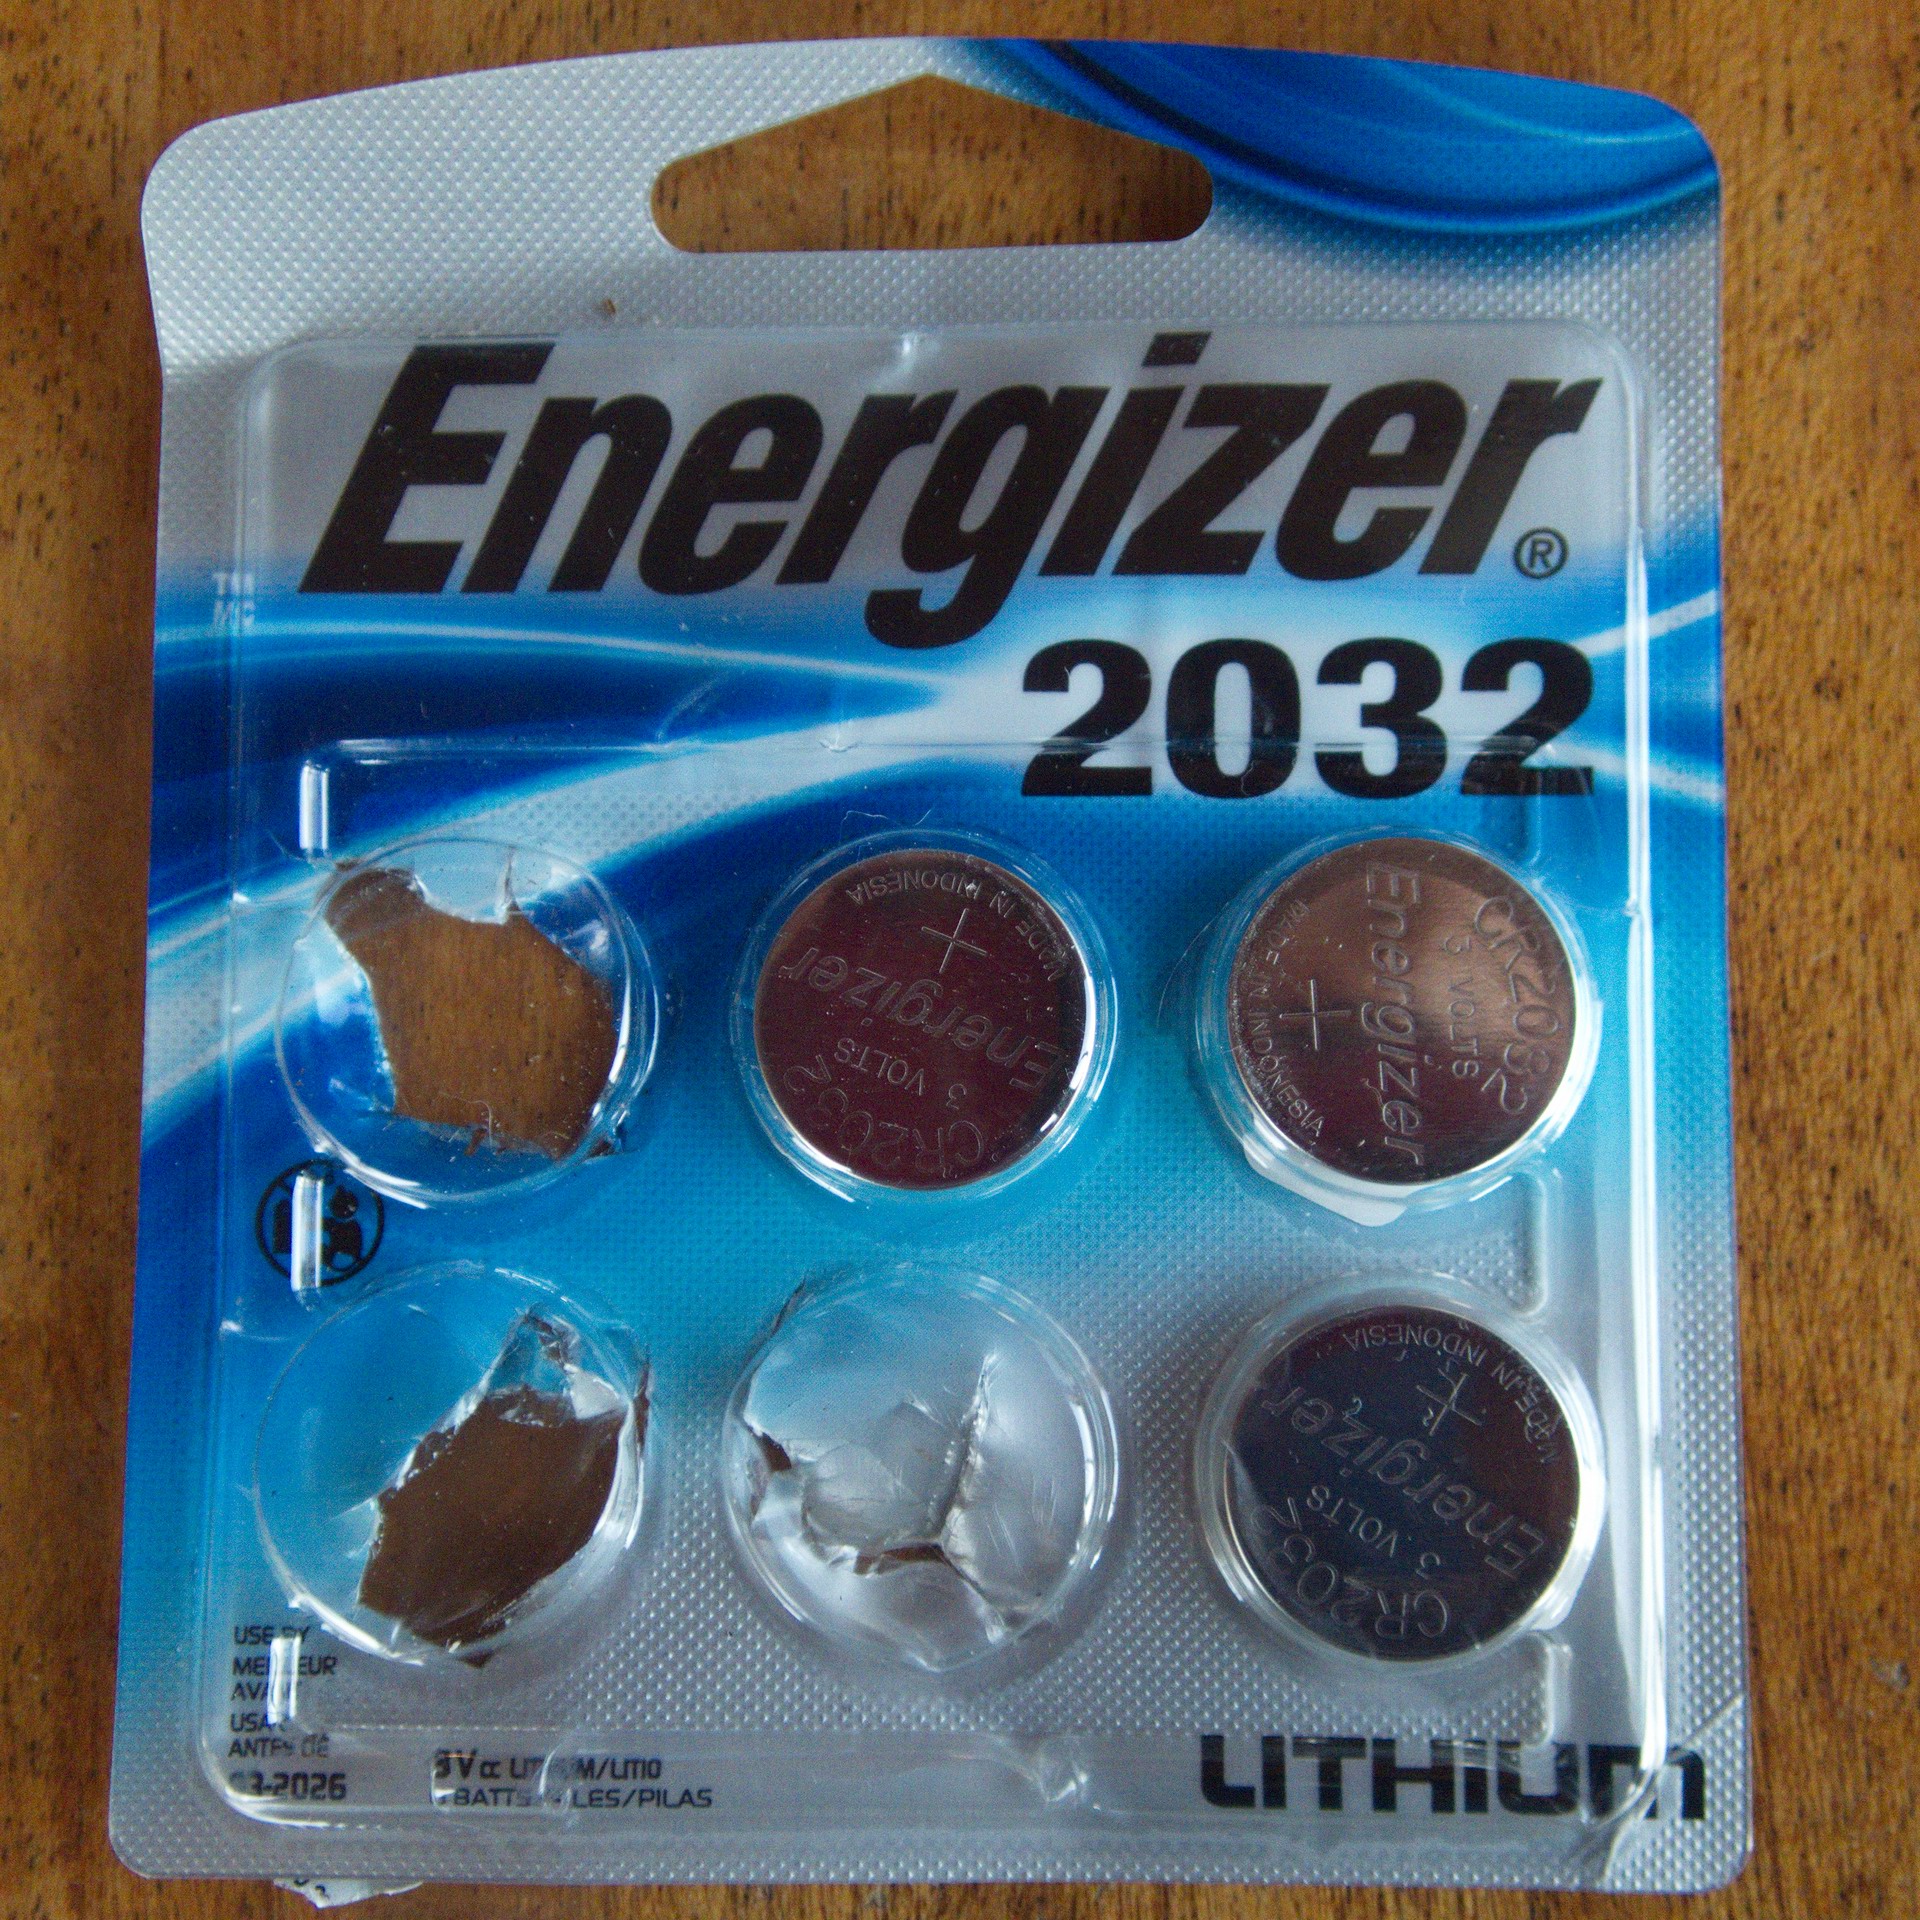 PILA ENERGIZER 2032 - Energizer